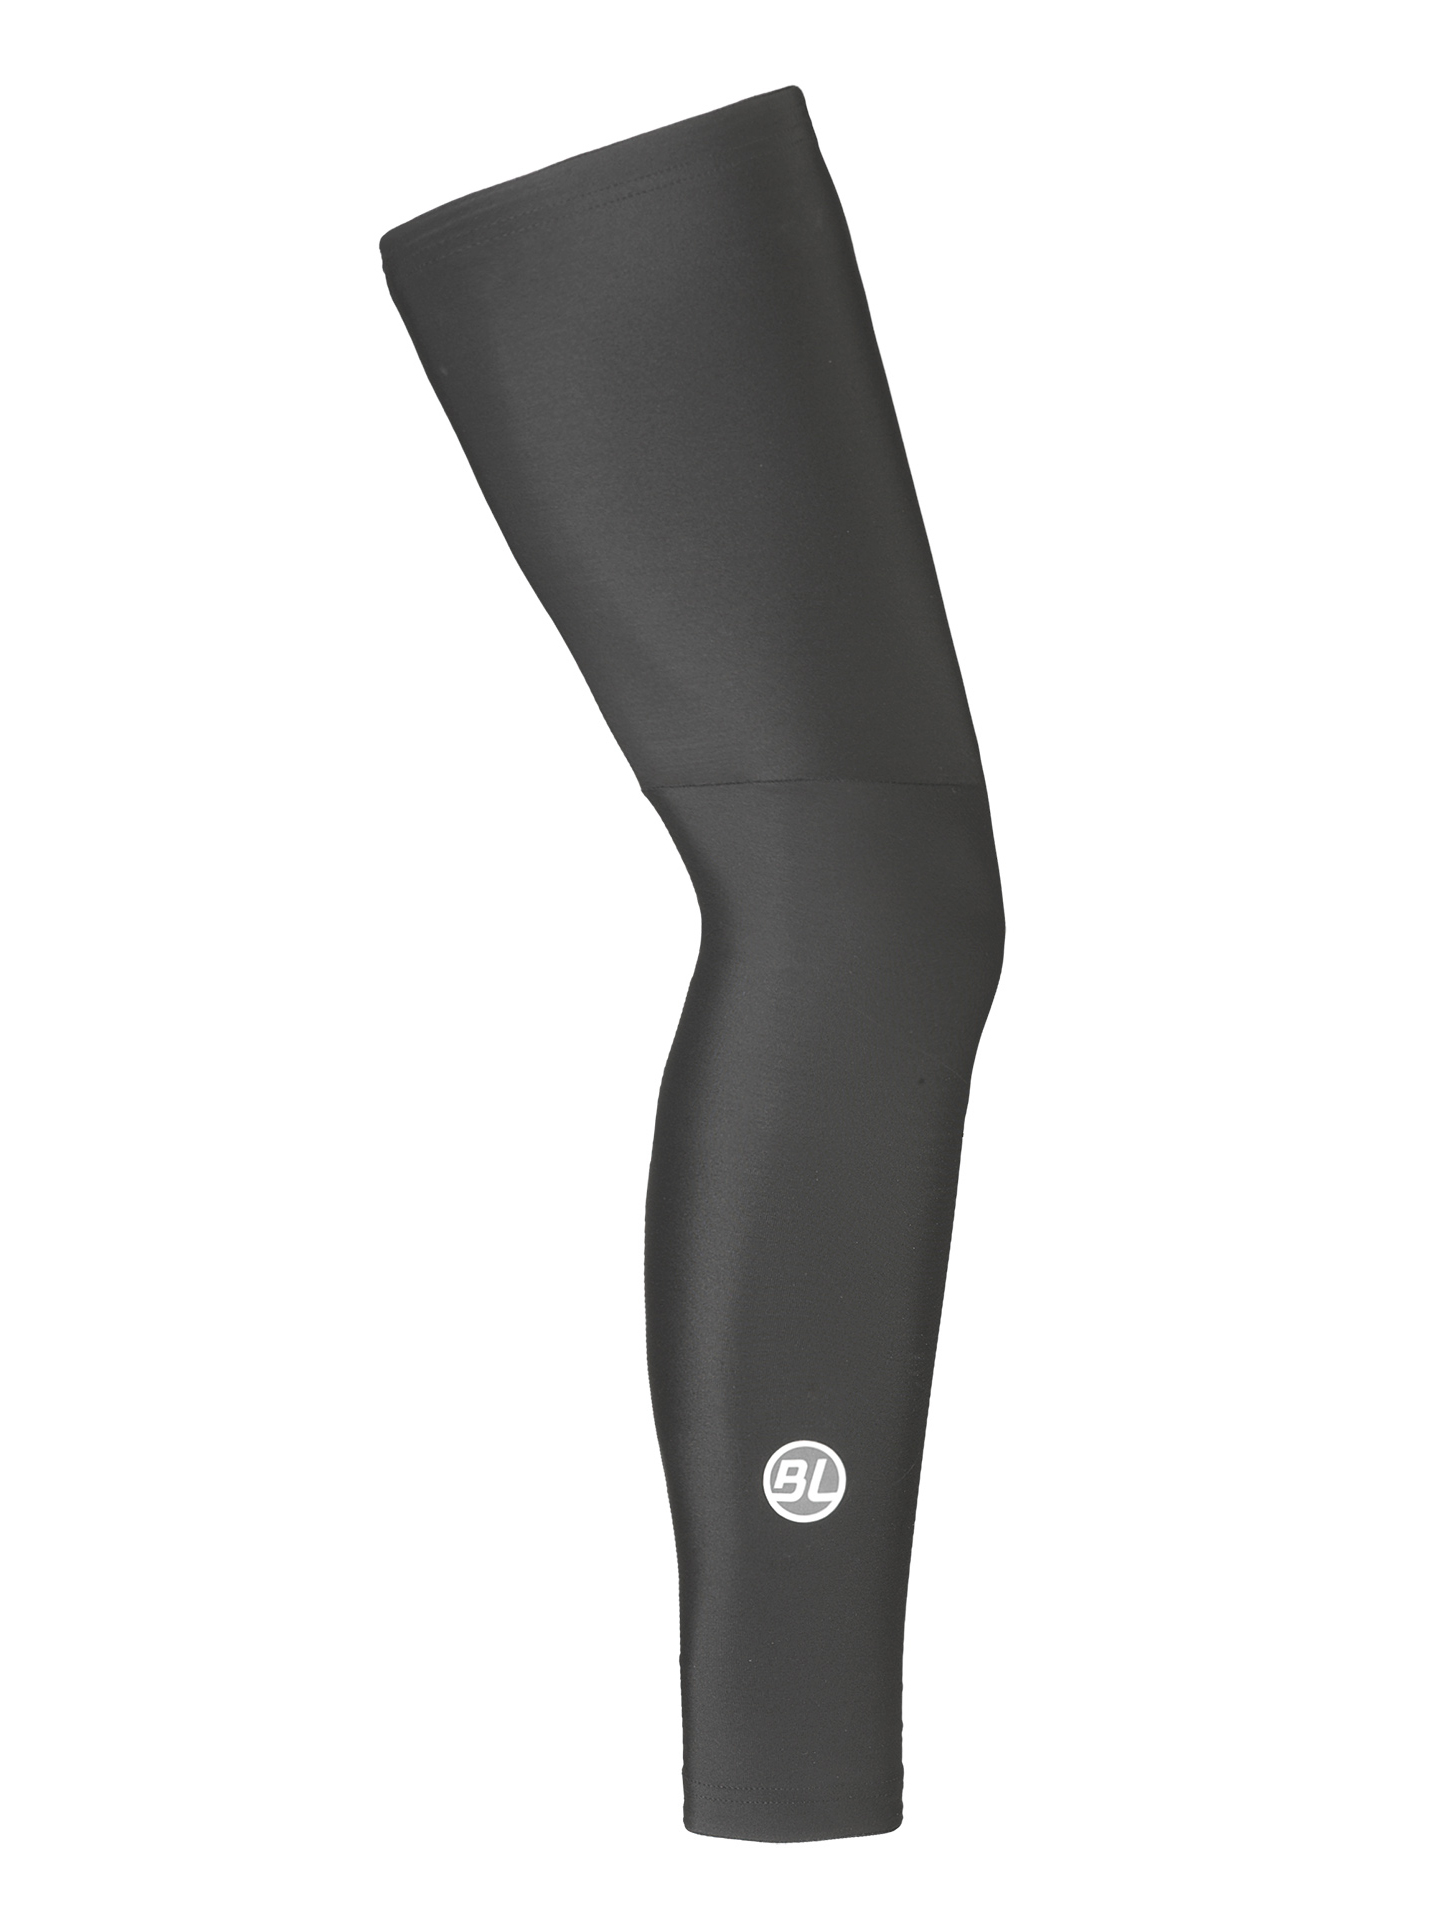 Утеплитель ног Bicycle Line FIANDRE, black (черный), XL